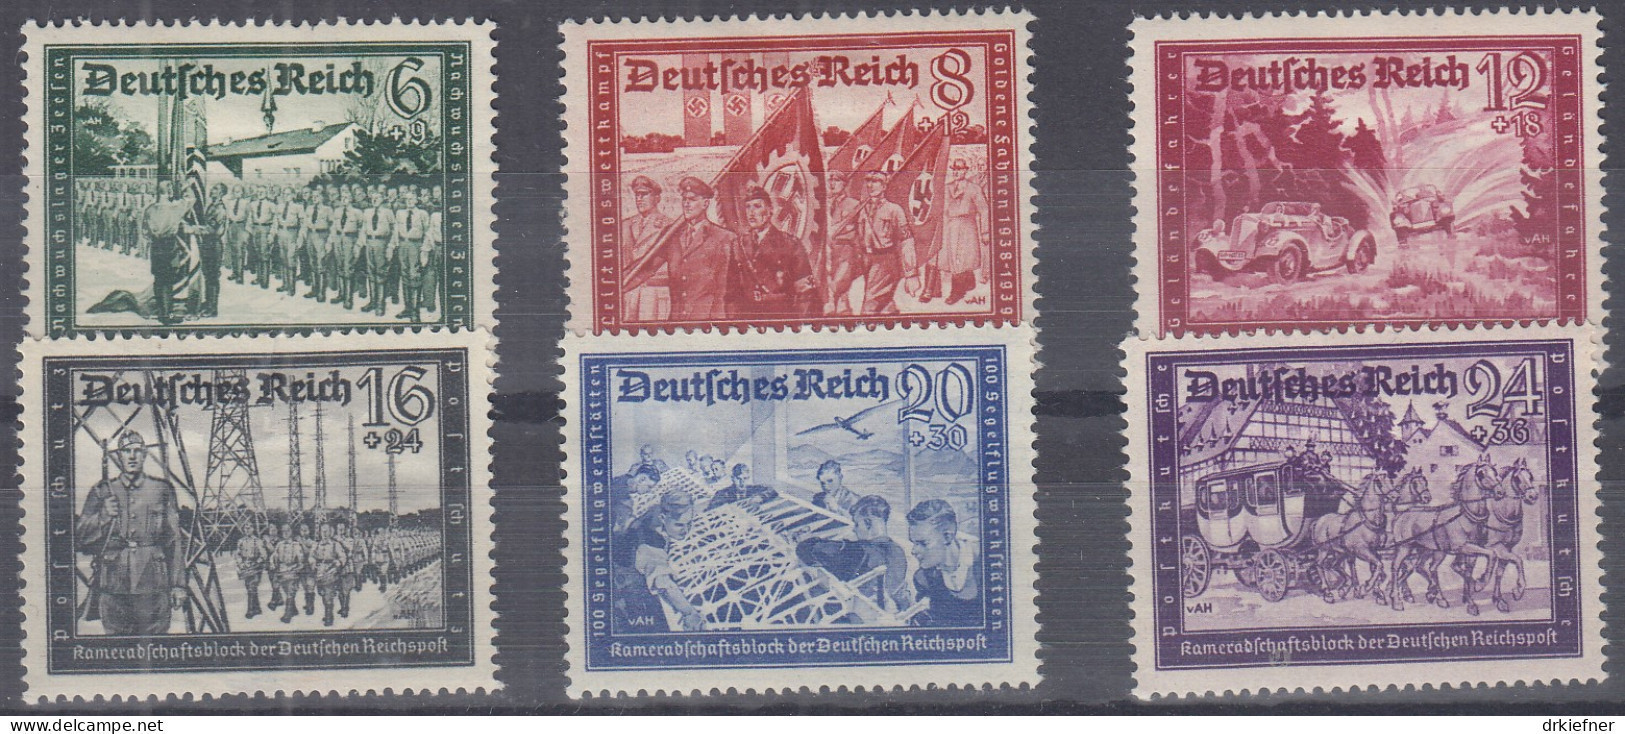 DR 773-778, Ungebraucht *, Kameradschaftsblock Der Deutschen Reichspost, 1941 - Ungebraucht